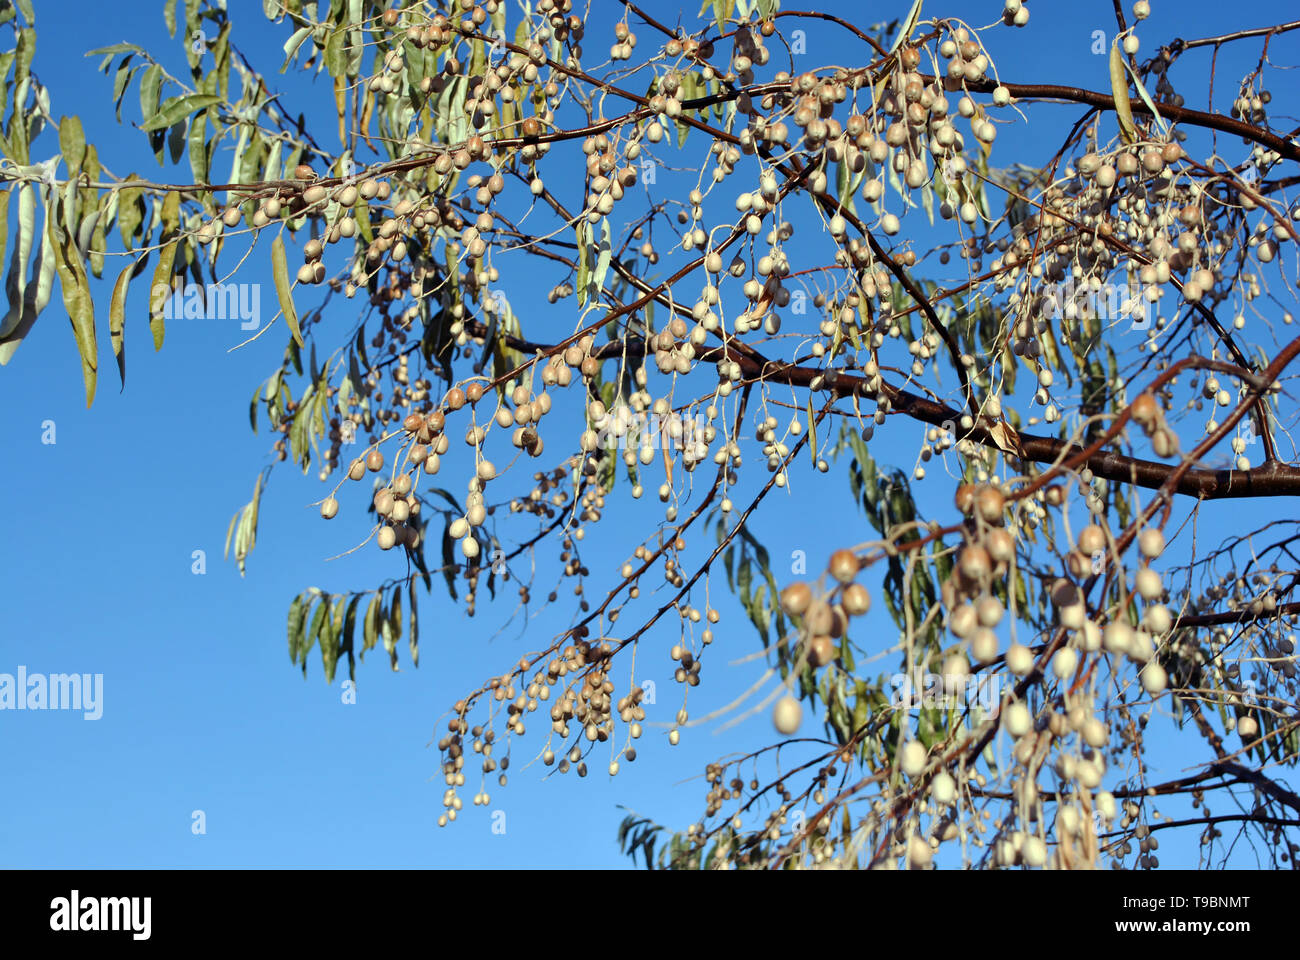 Elaeagnus angustifolia, comunemente chiamato Oliva Russo, argento berry, olivastro, persiano oliva o rami dell'ulivo selvatico con bacche sul cielo blu backgroun Foto Stock